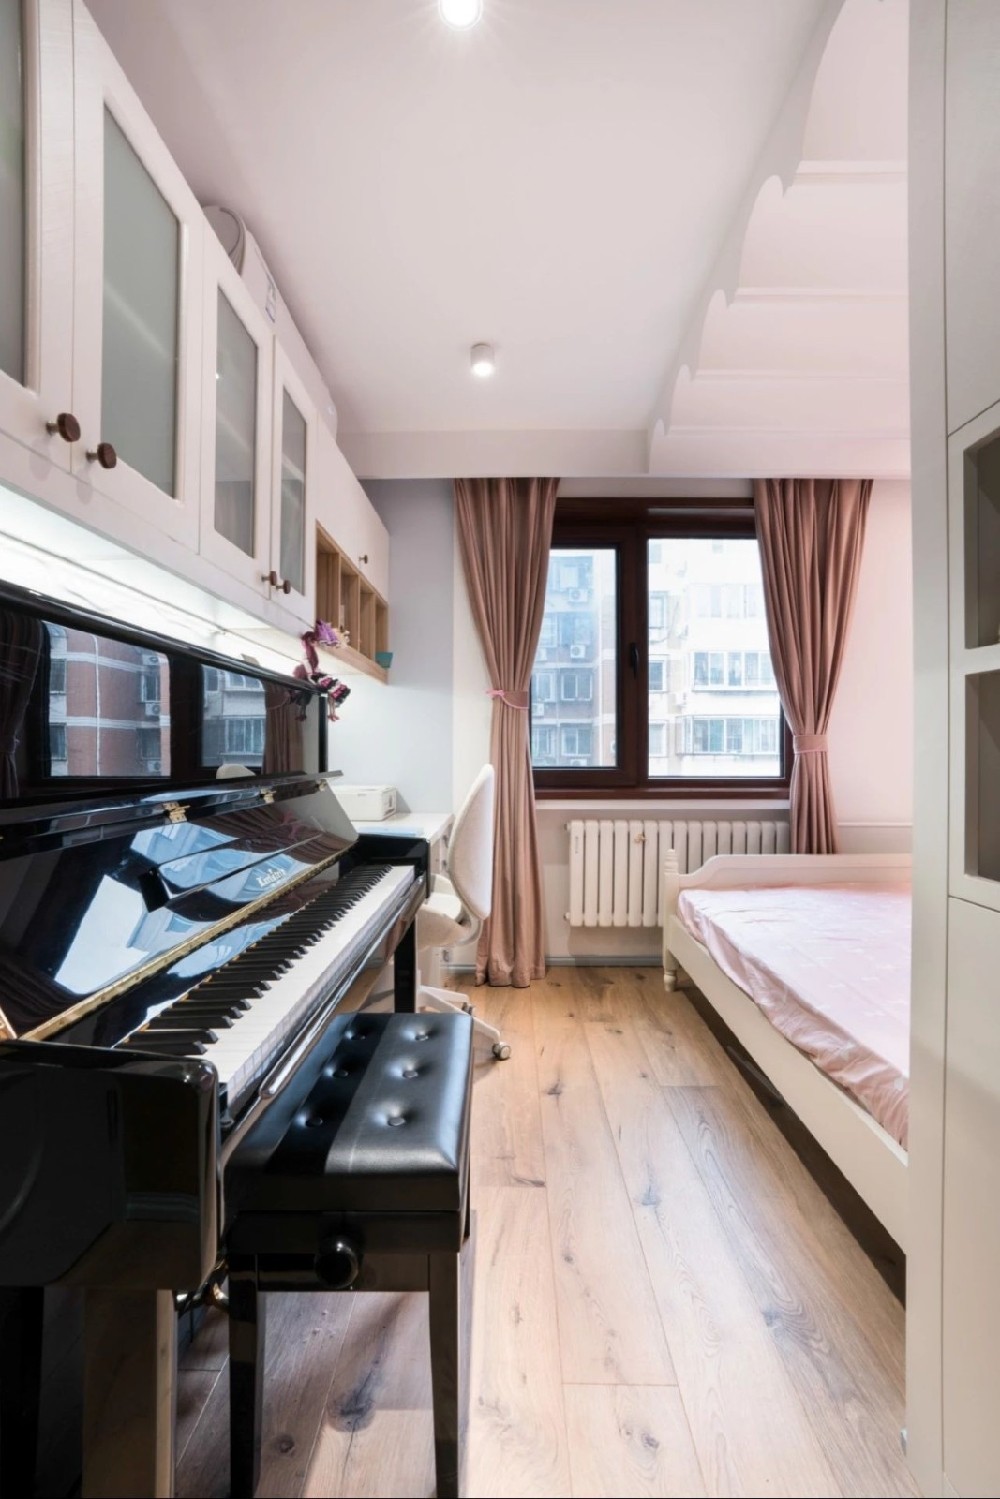 在卧室里放一架钢琴也是完全没有问题的,公主房更显优雅